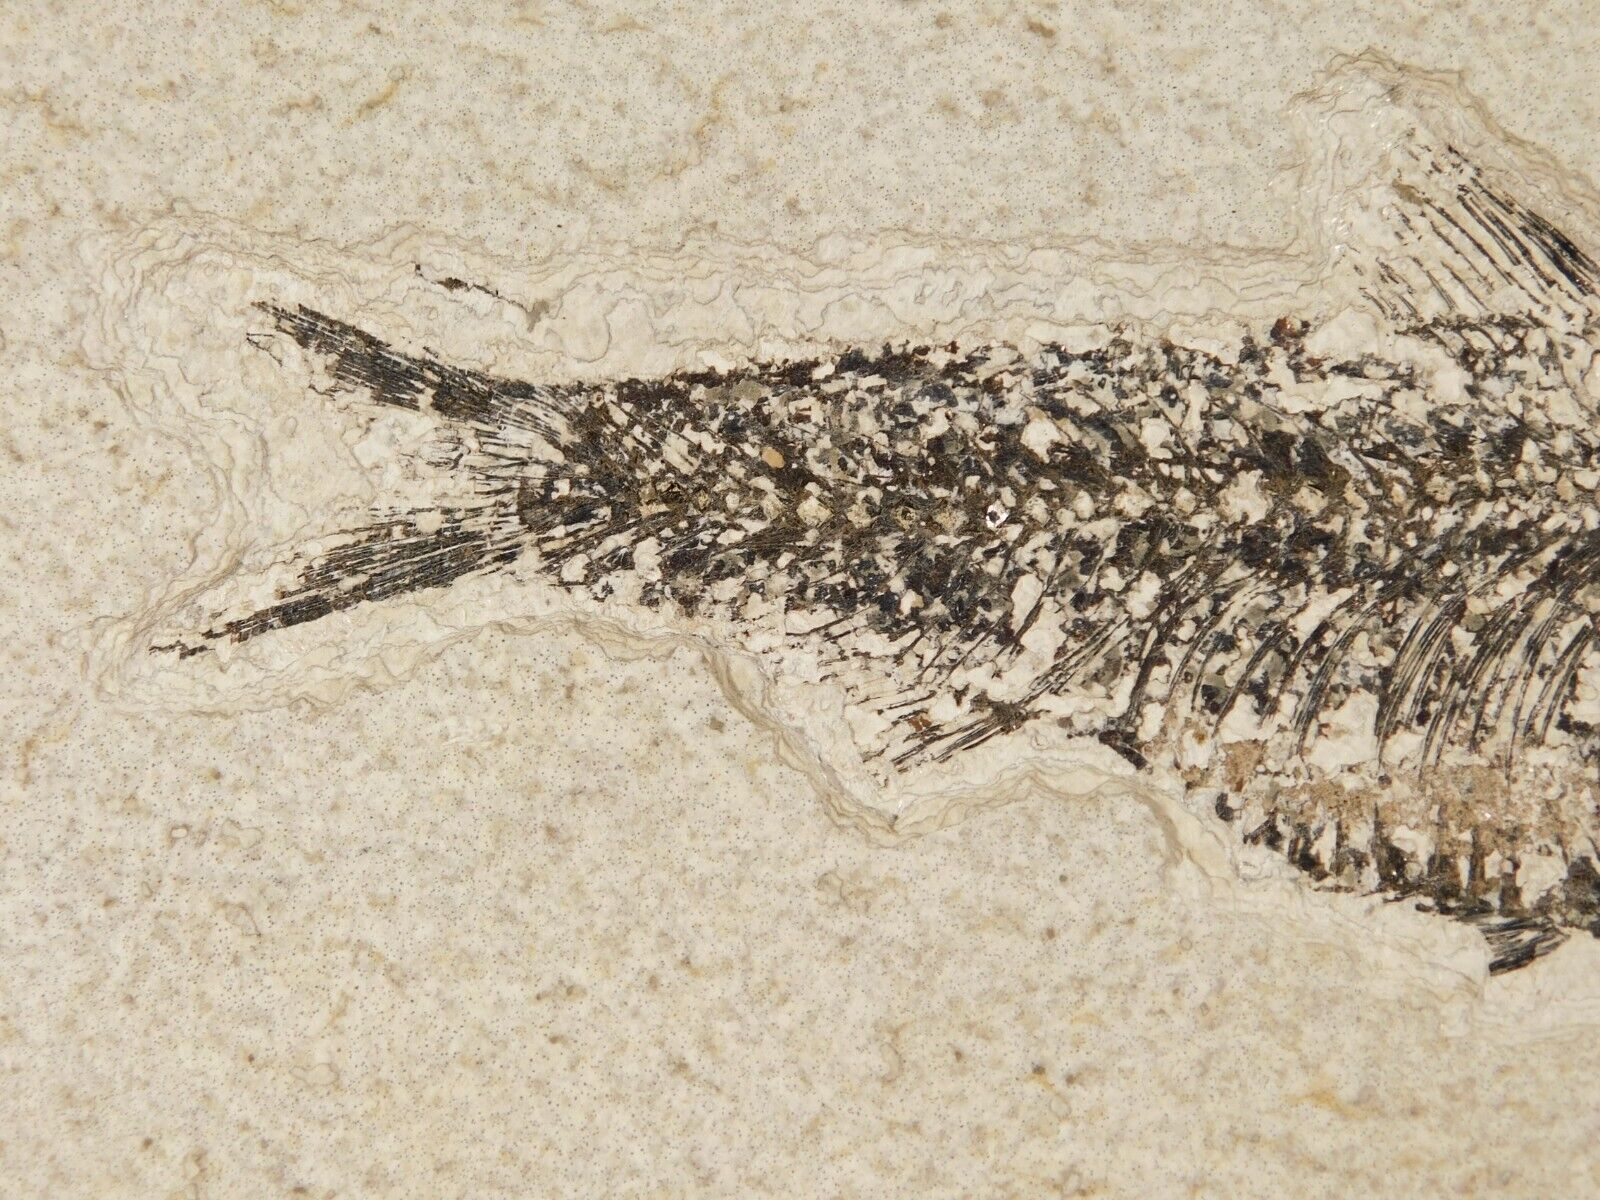 Super Fine BONES Knightia FISH Fossil on Big Matrix From Wyoming 1715gr